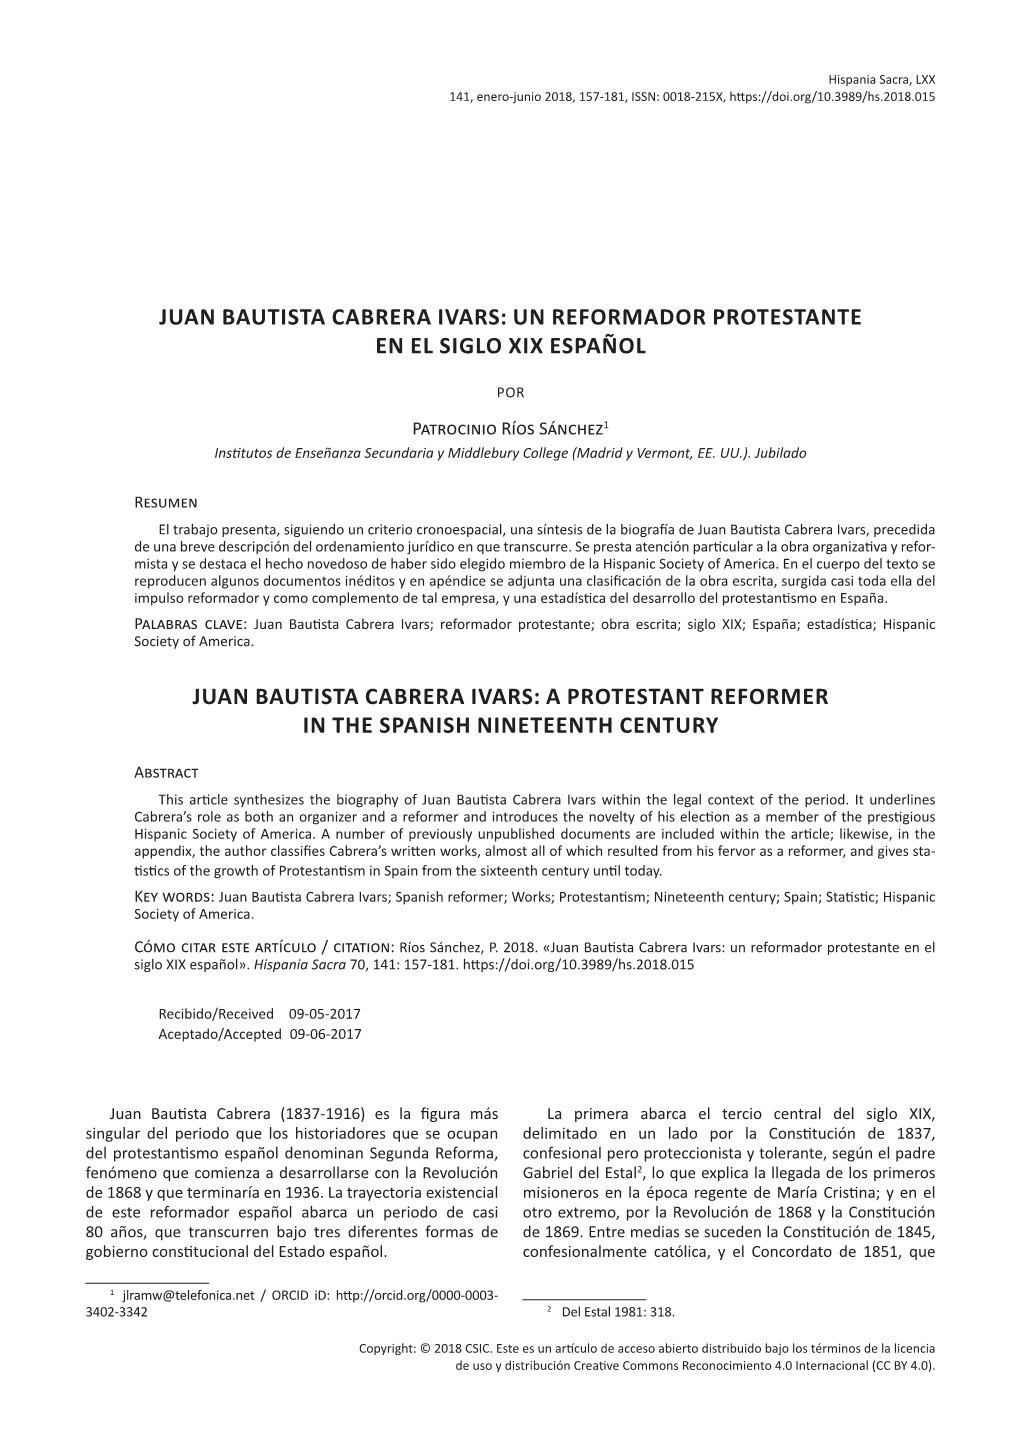 Juan Bautista Cabrera Ivars: Un Reformador Protestante En El Siglo Xix Español